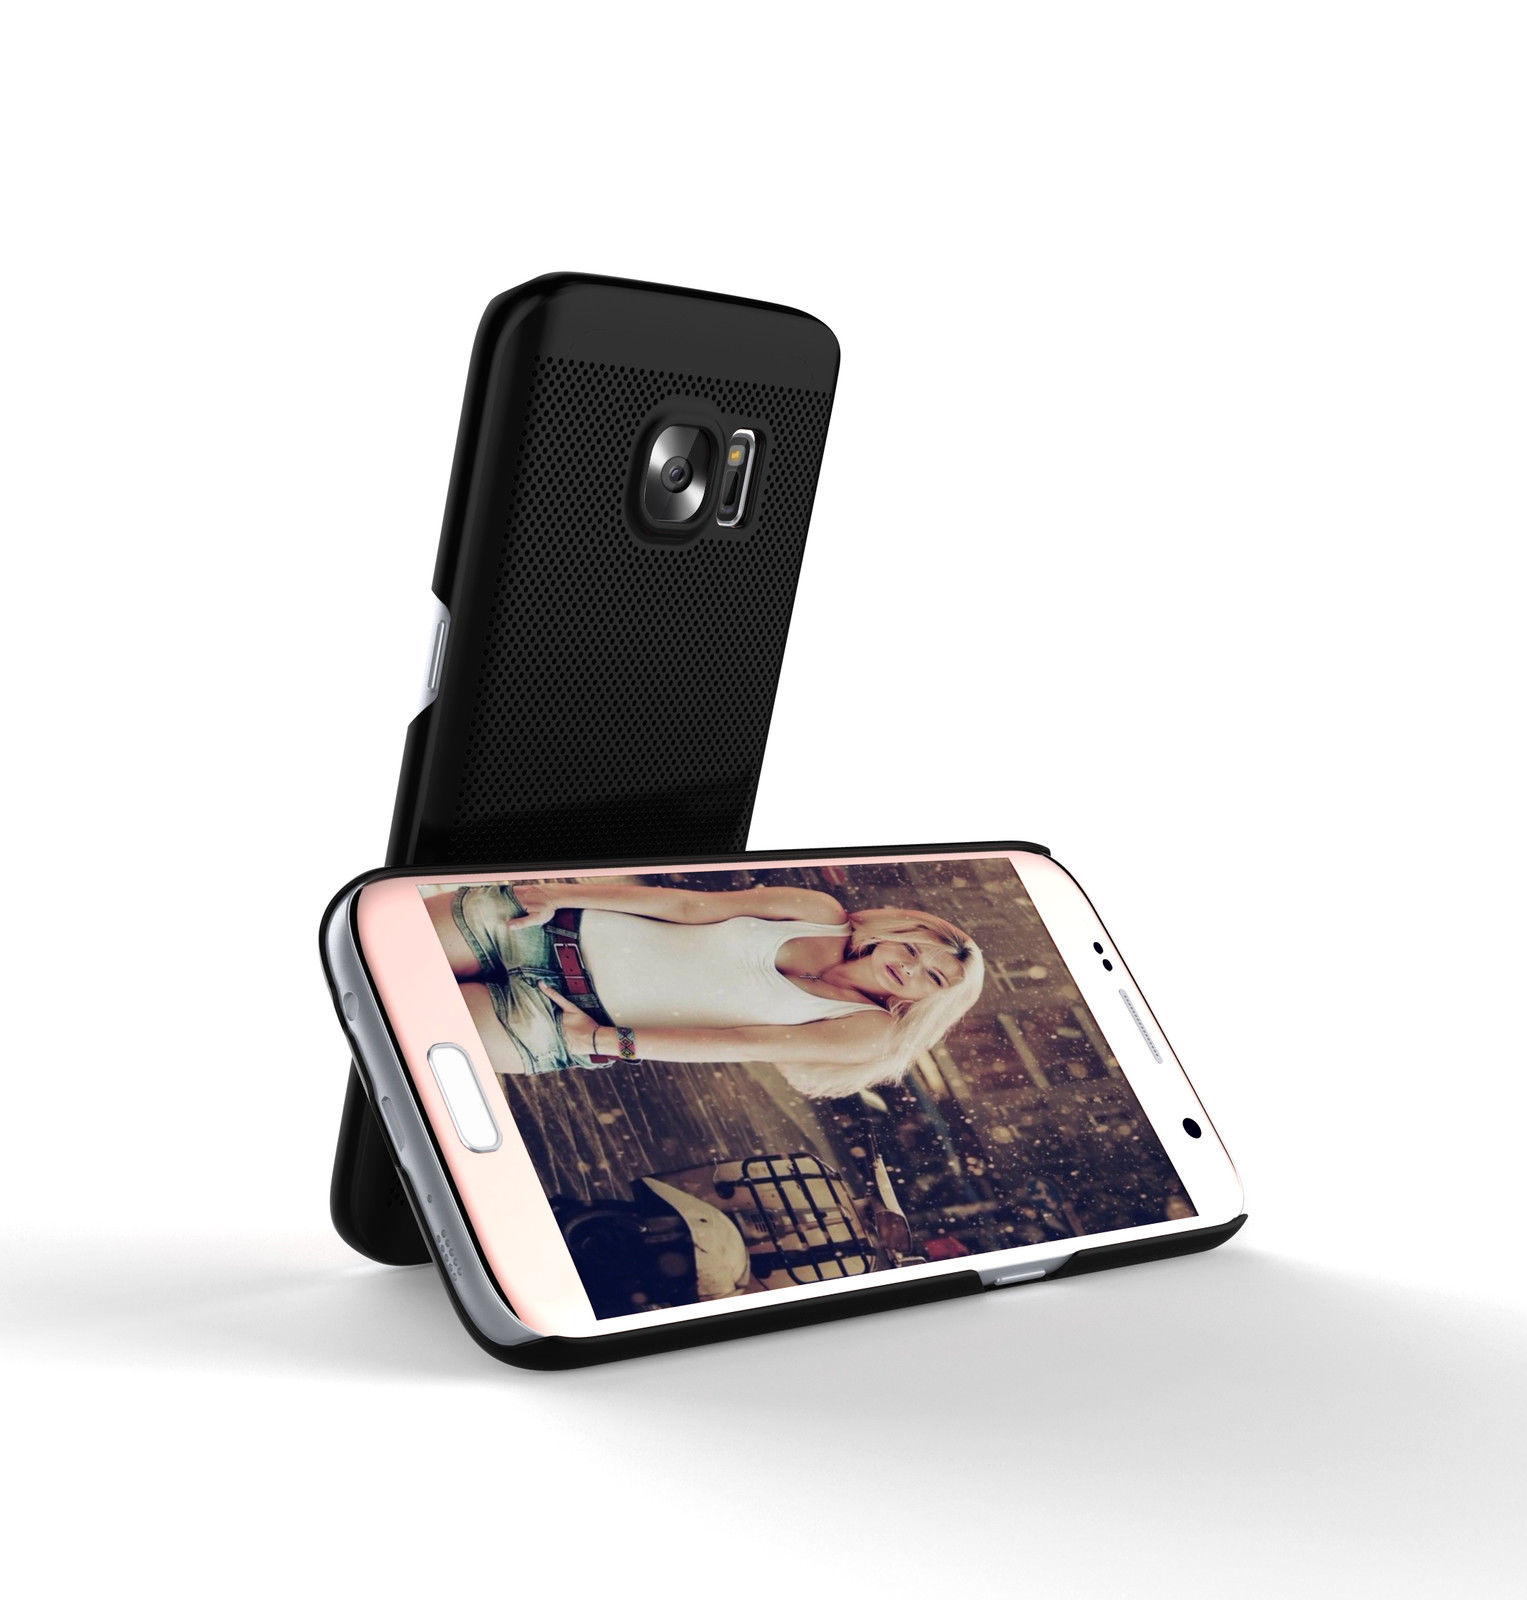 Ốp lưng Samsung Galaxy S7 Edge hiệu Loopee được làm từ nhựa Policacbonat, thiết kế cực mỏng chỉ 8mm siêu nhẹ chỉ giúp bảo vệ cho điện thoại tốt, ít bám bẩn, cầm chắc tay.